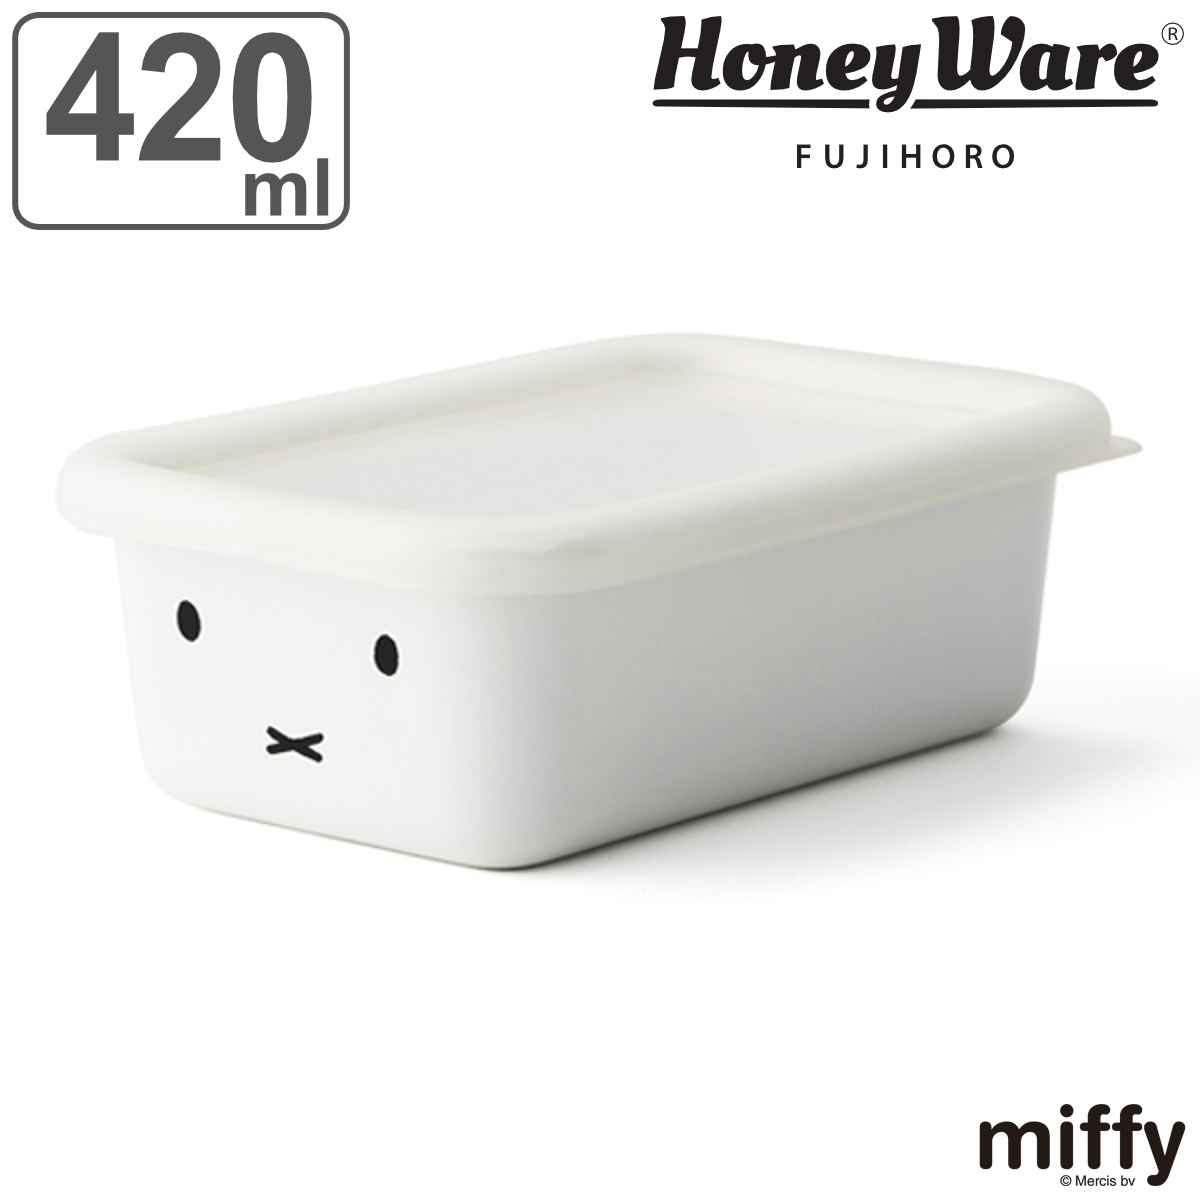 保存容器 ホーロー製 420ml 浅型 ミッフィー 富士ホーロー HoneyWere